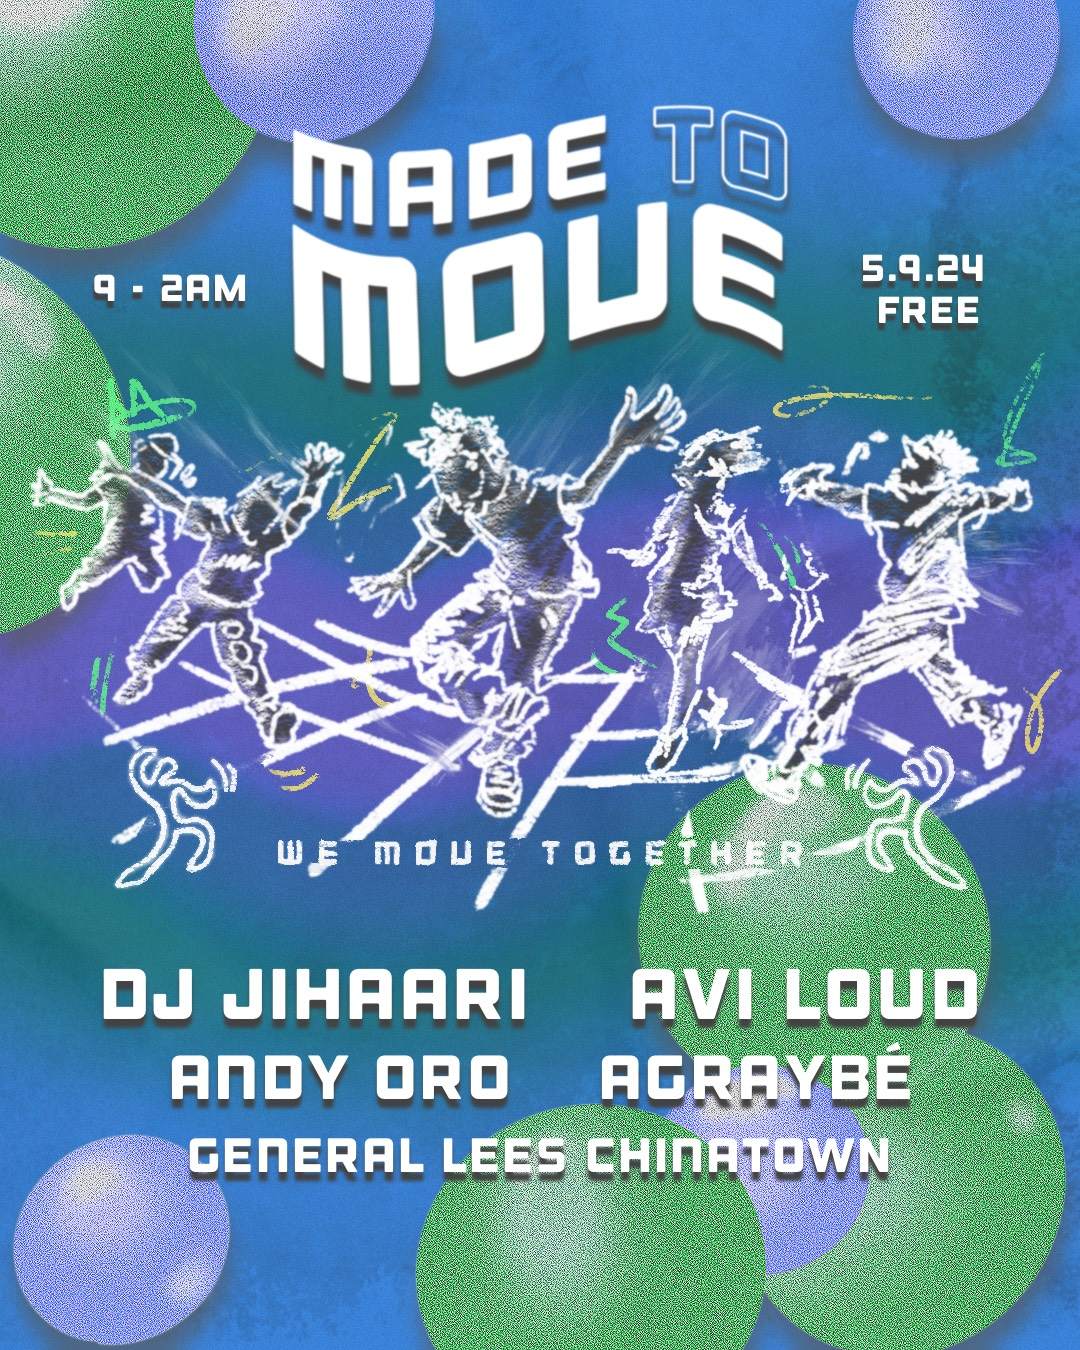 Made to Move with Avi Loud and DJ Jihaari - フライヤー表